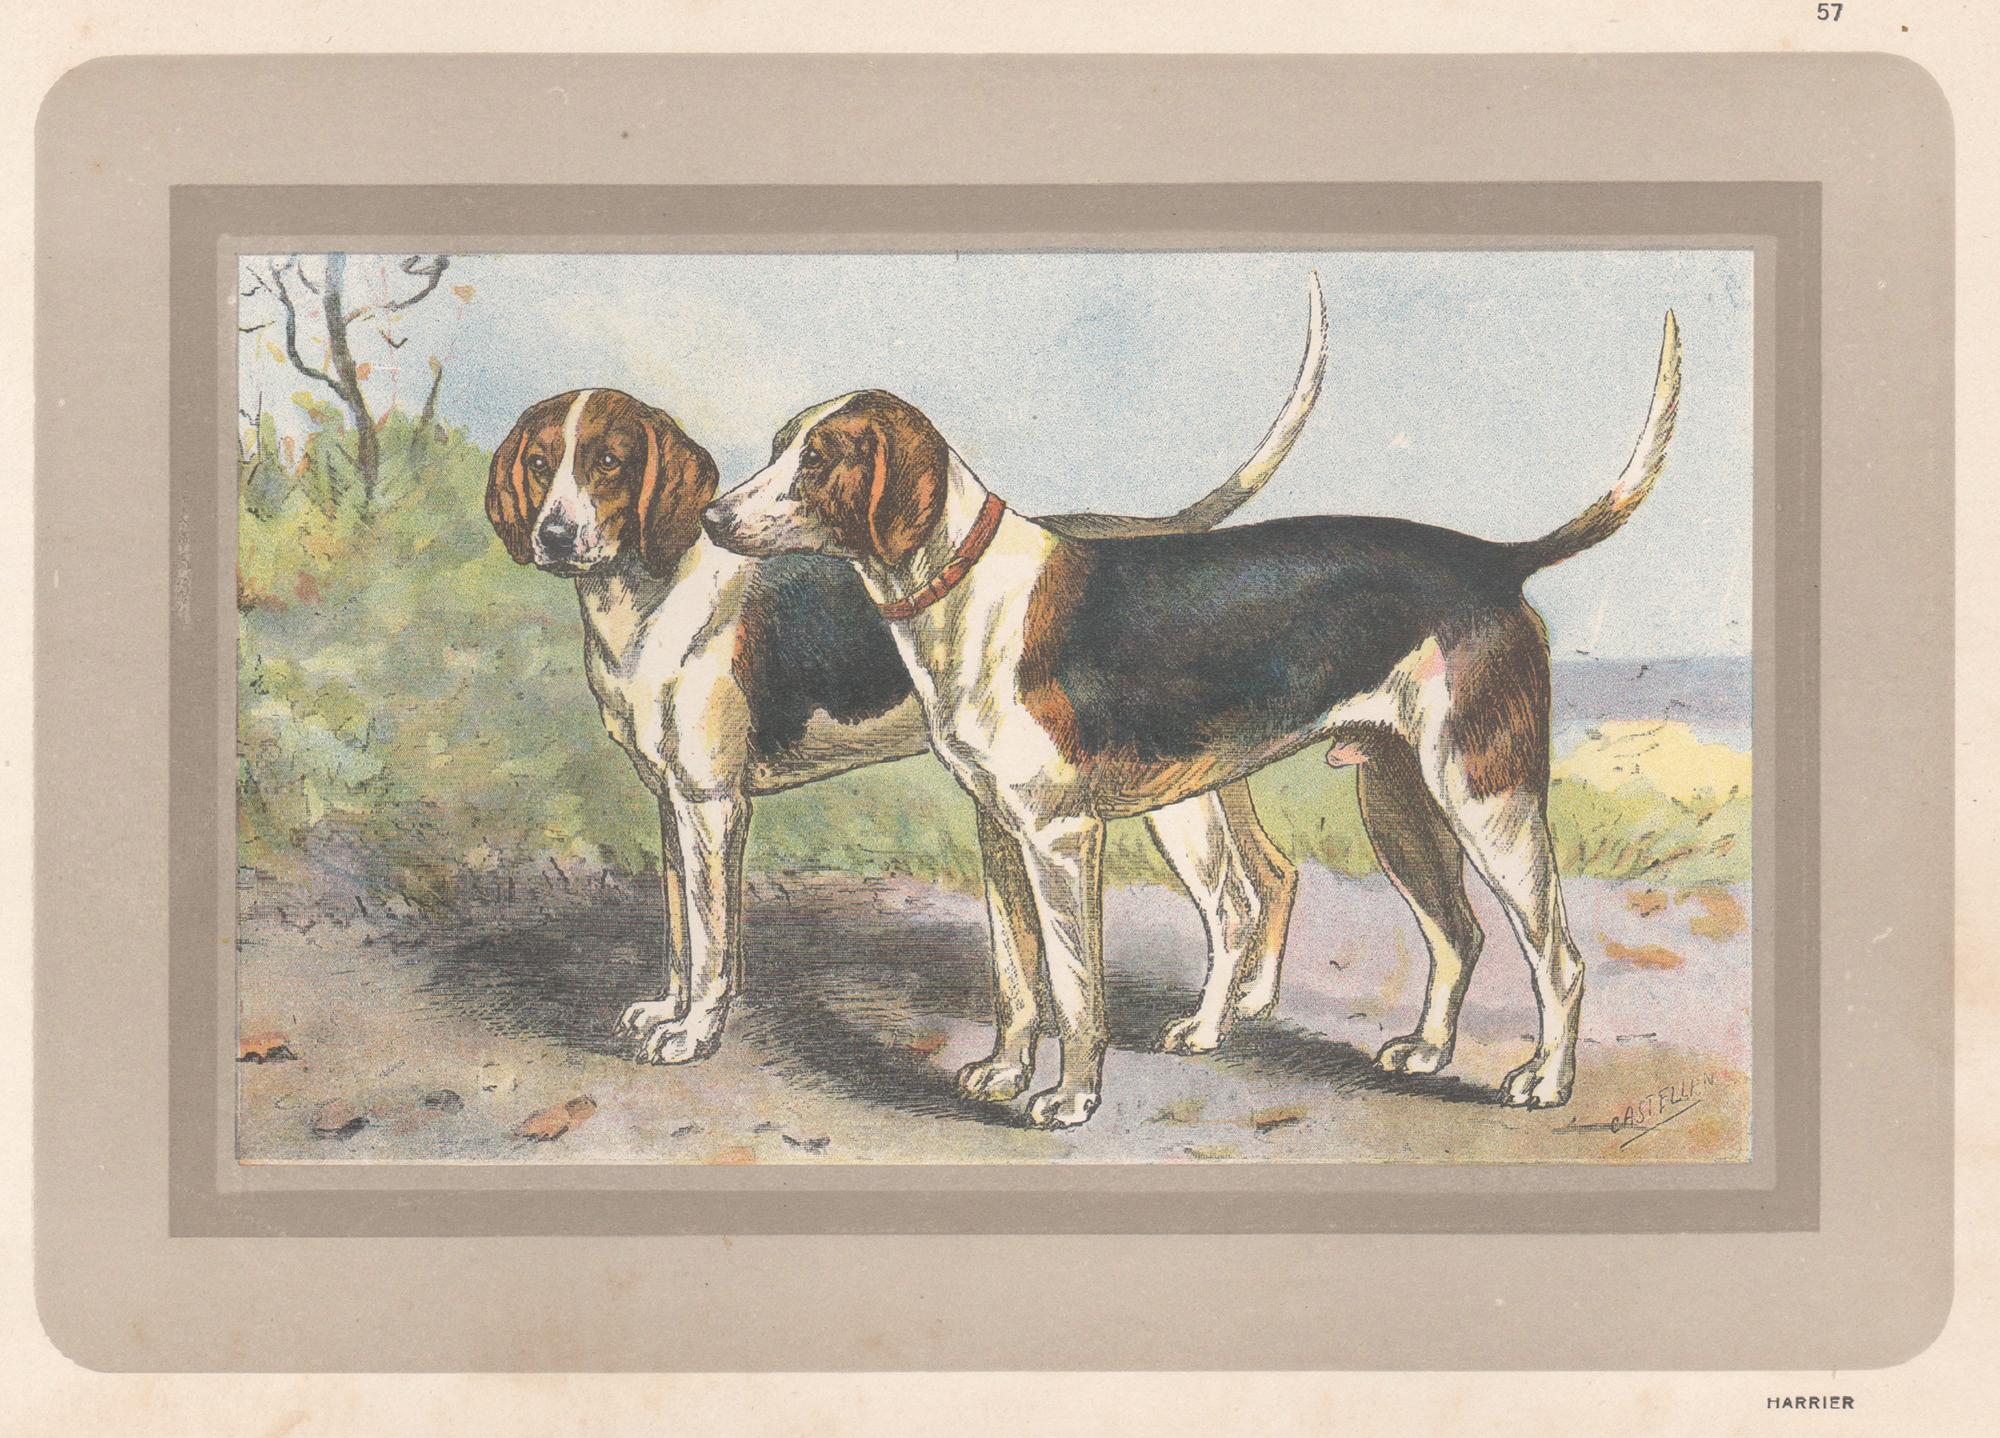 F Castellan Animal Print – Harrier, Französischer Chromolithographiedruck mit Hund, 1931